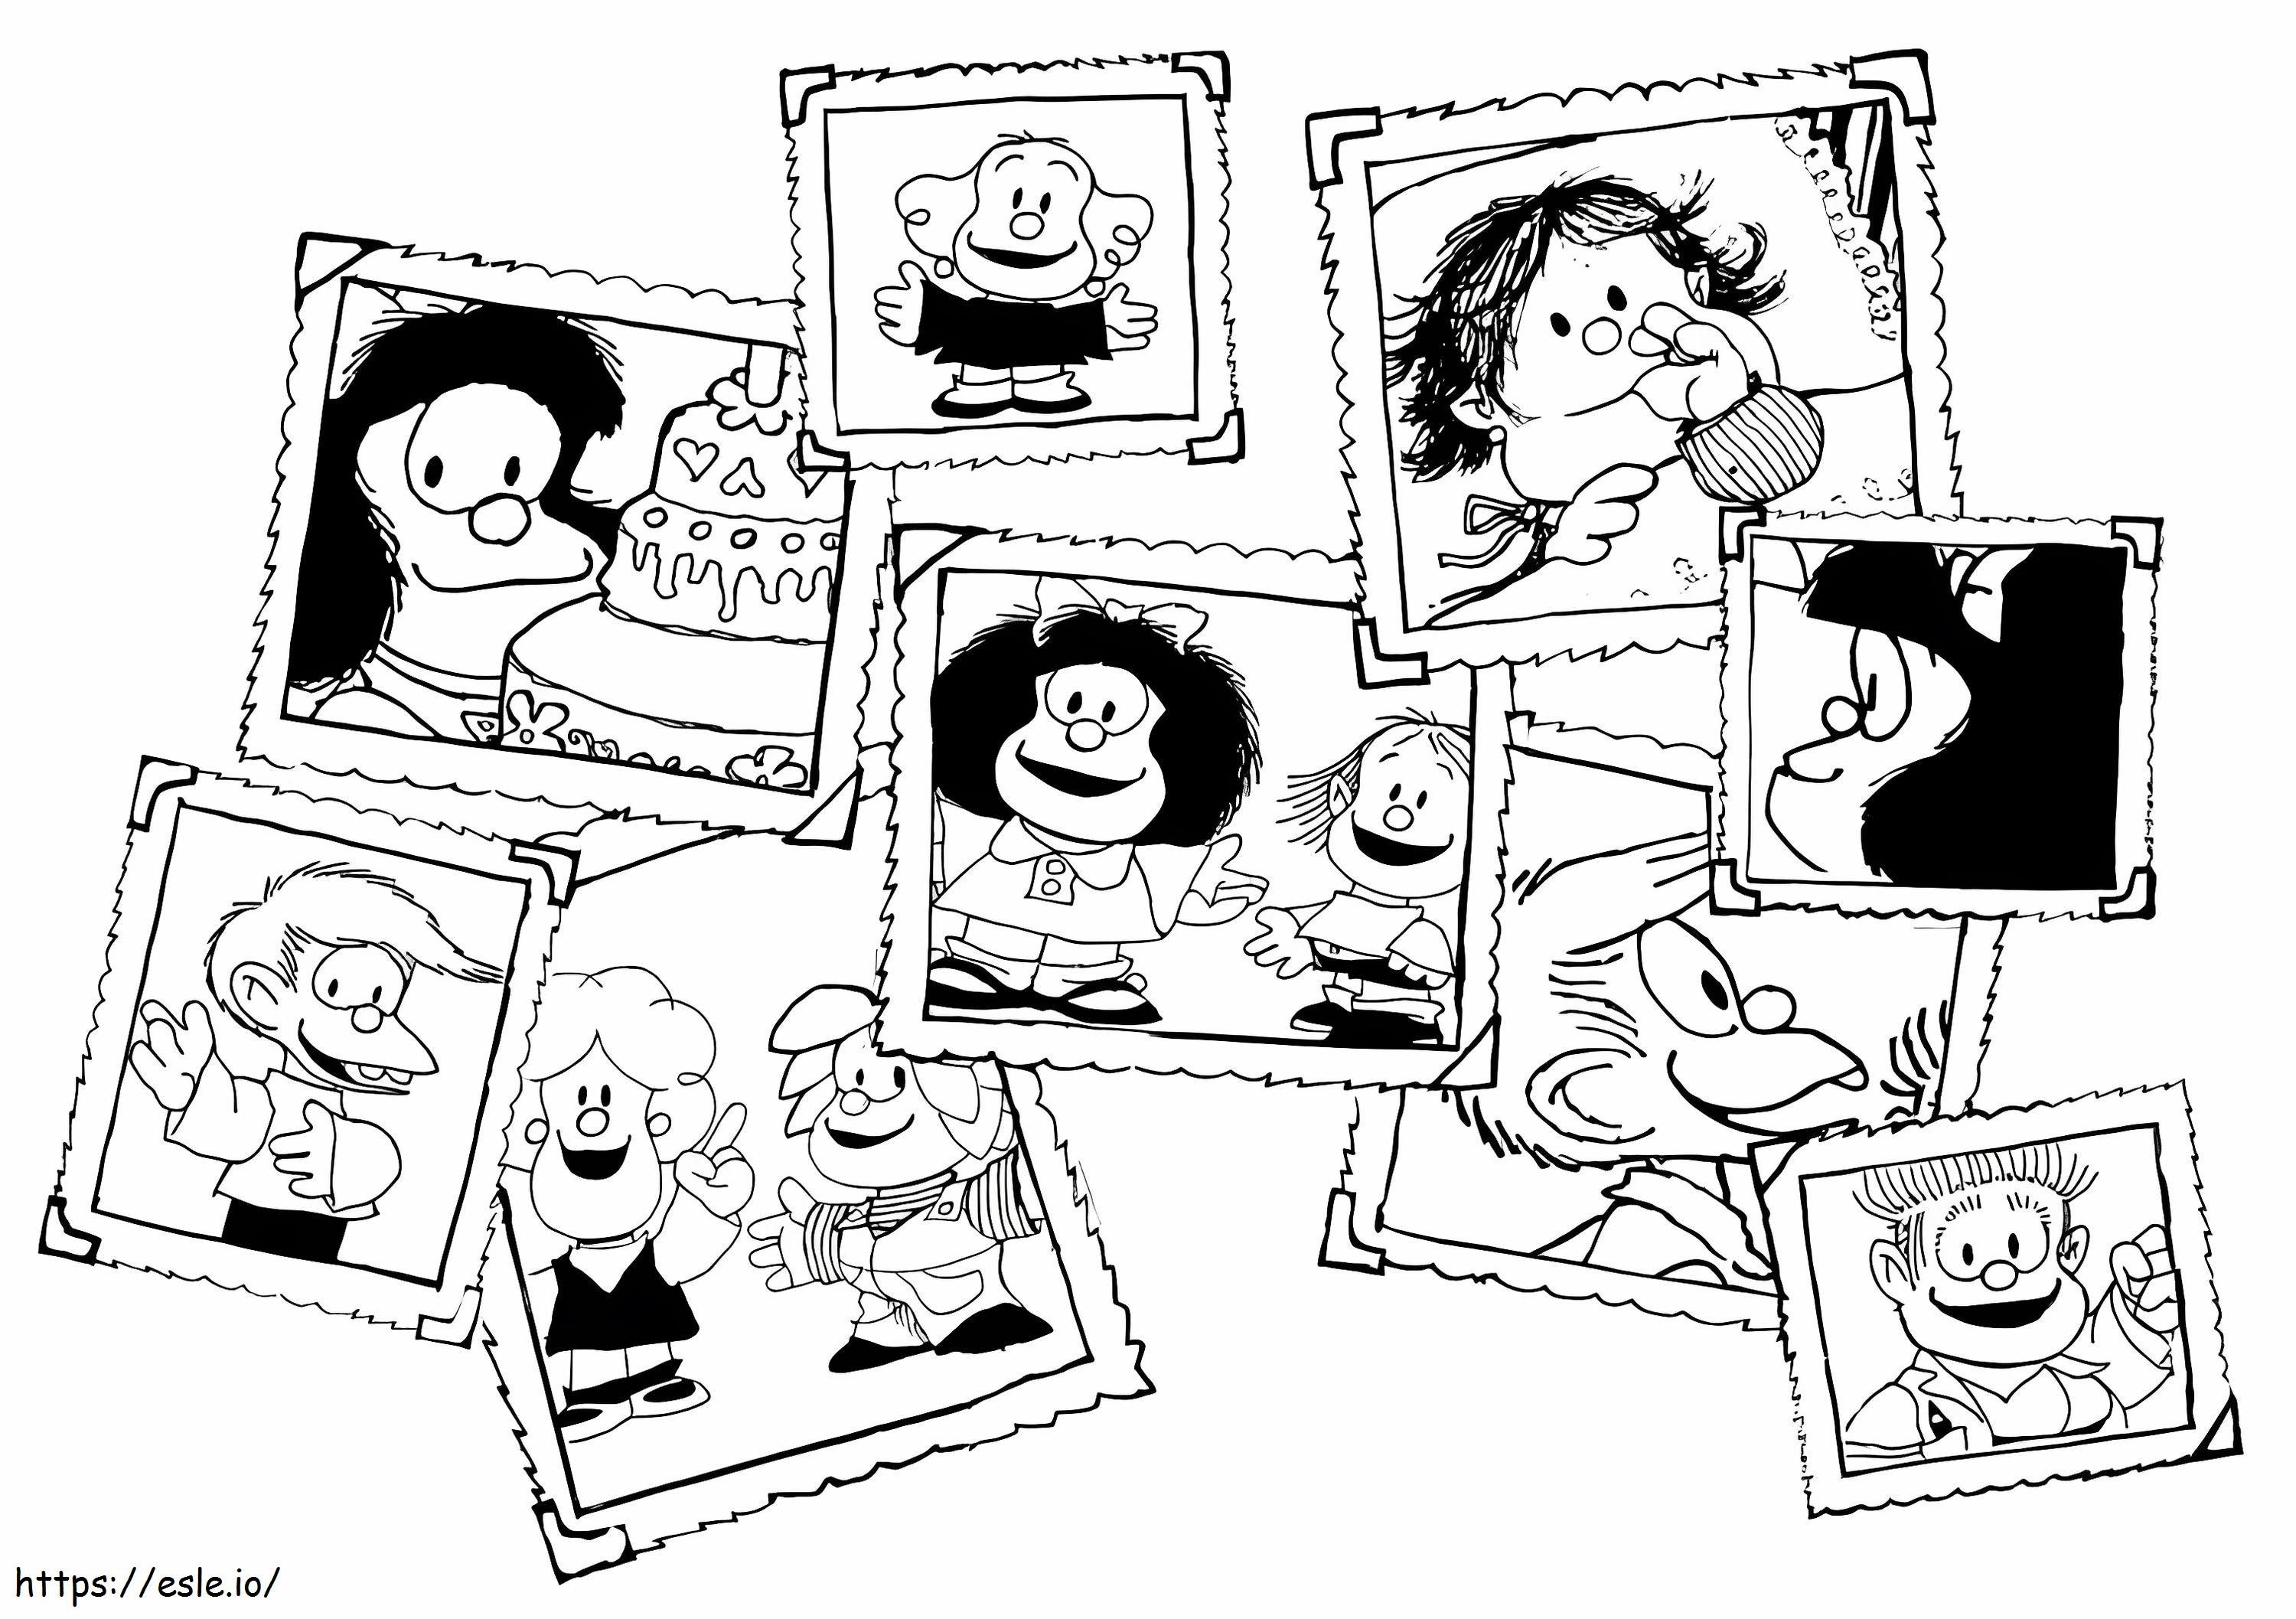 Immagini di Mafalda da colorare